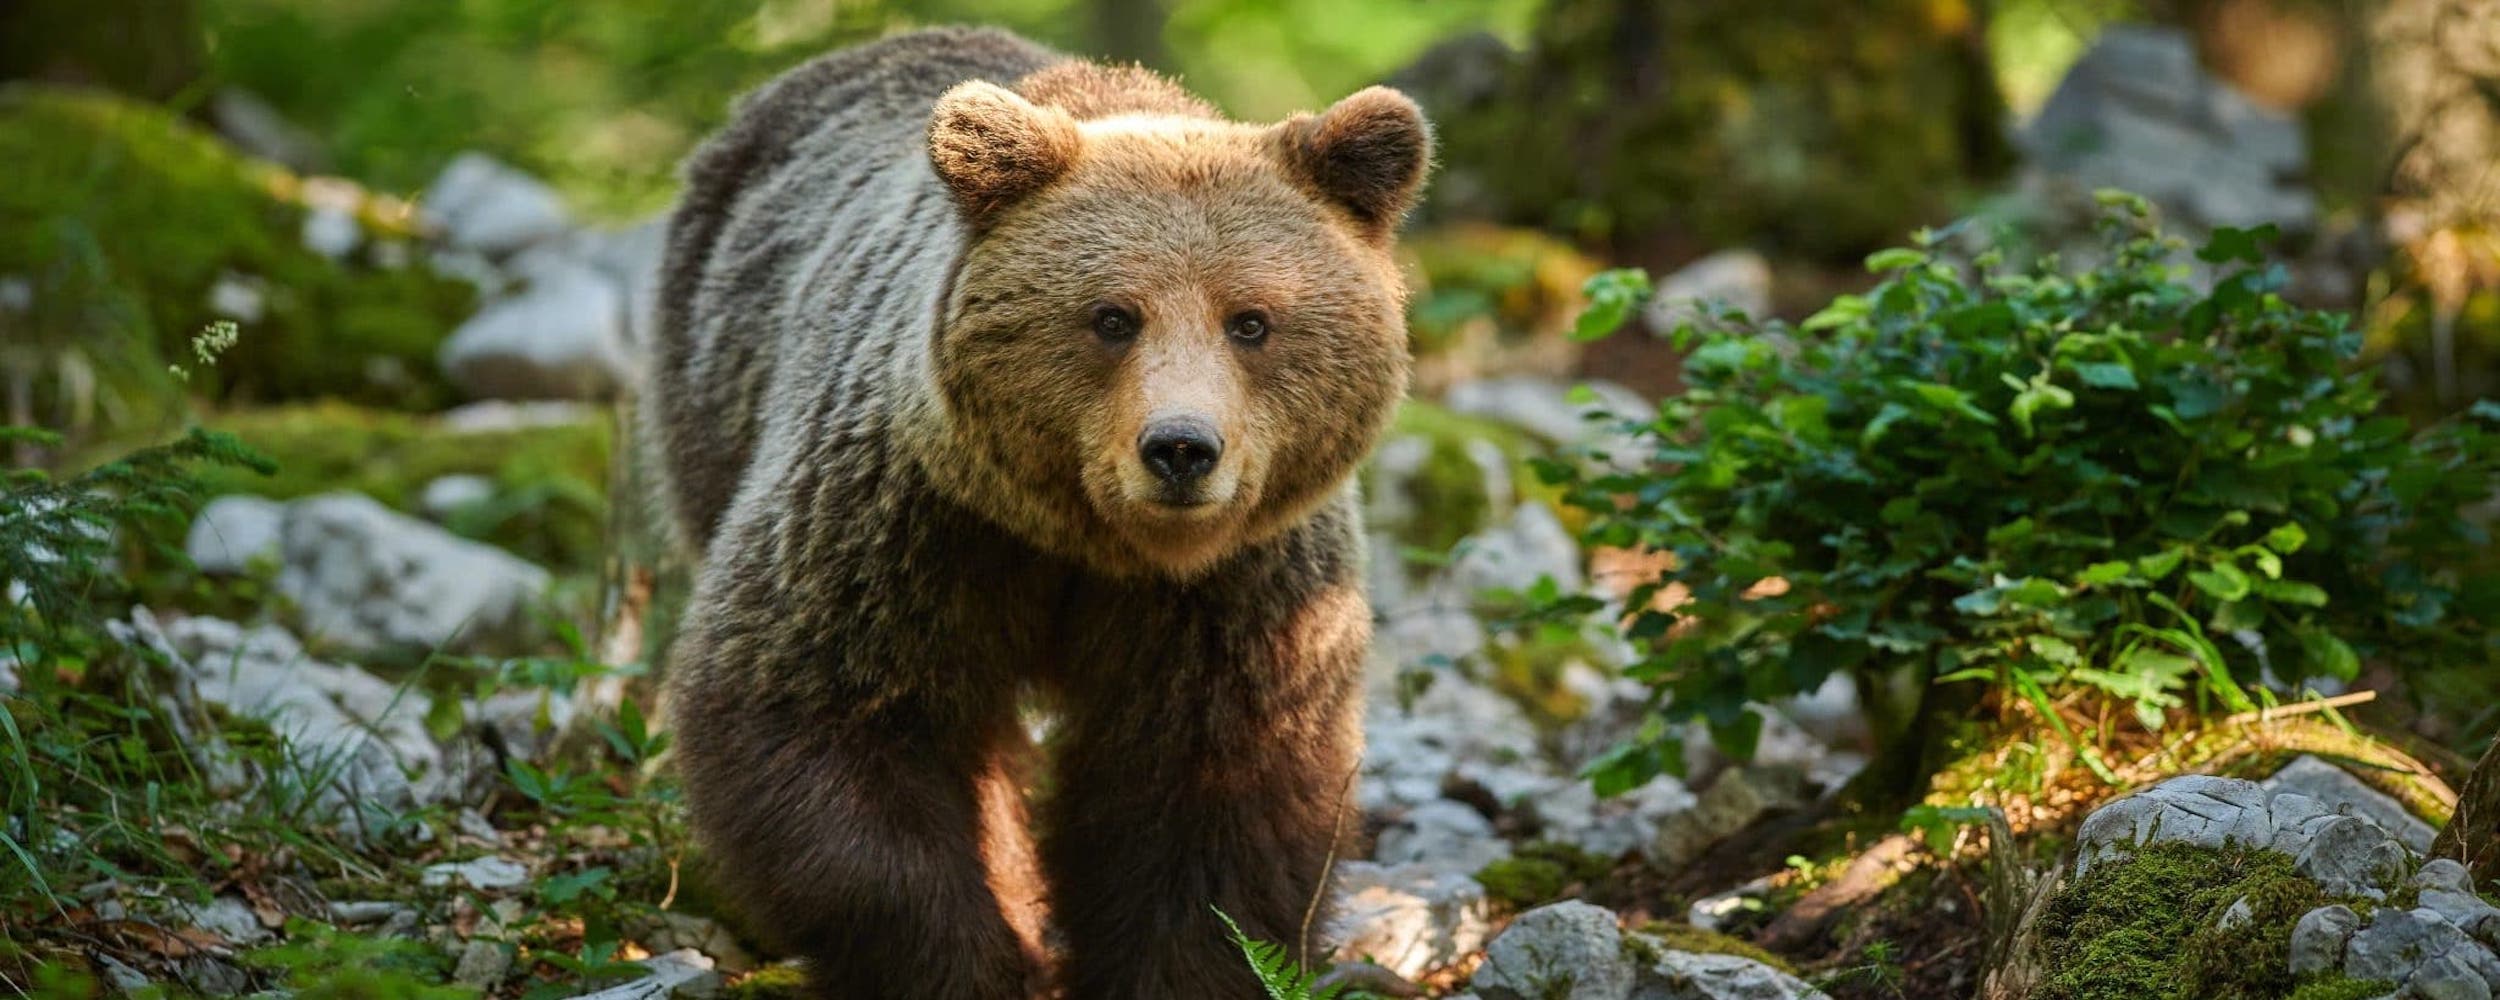 Rencontre avec les ours sauvages des Pyrénées au parc animalier d'Argelès-Gazost